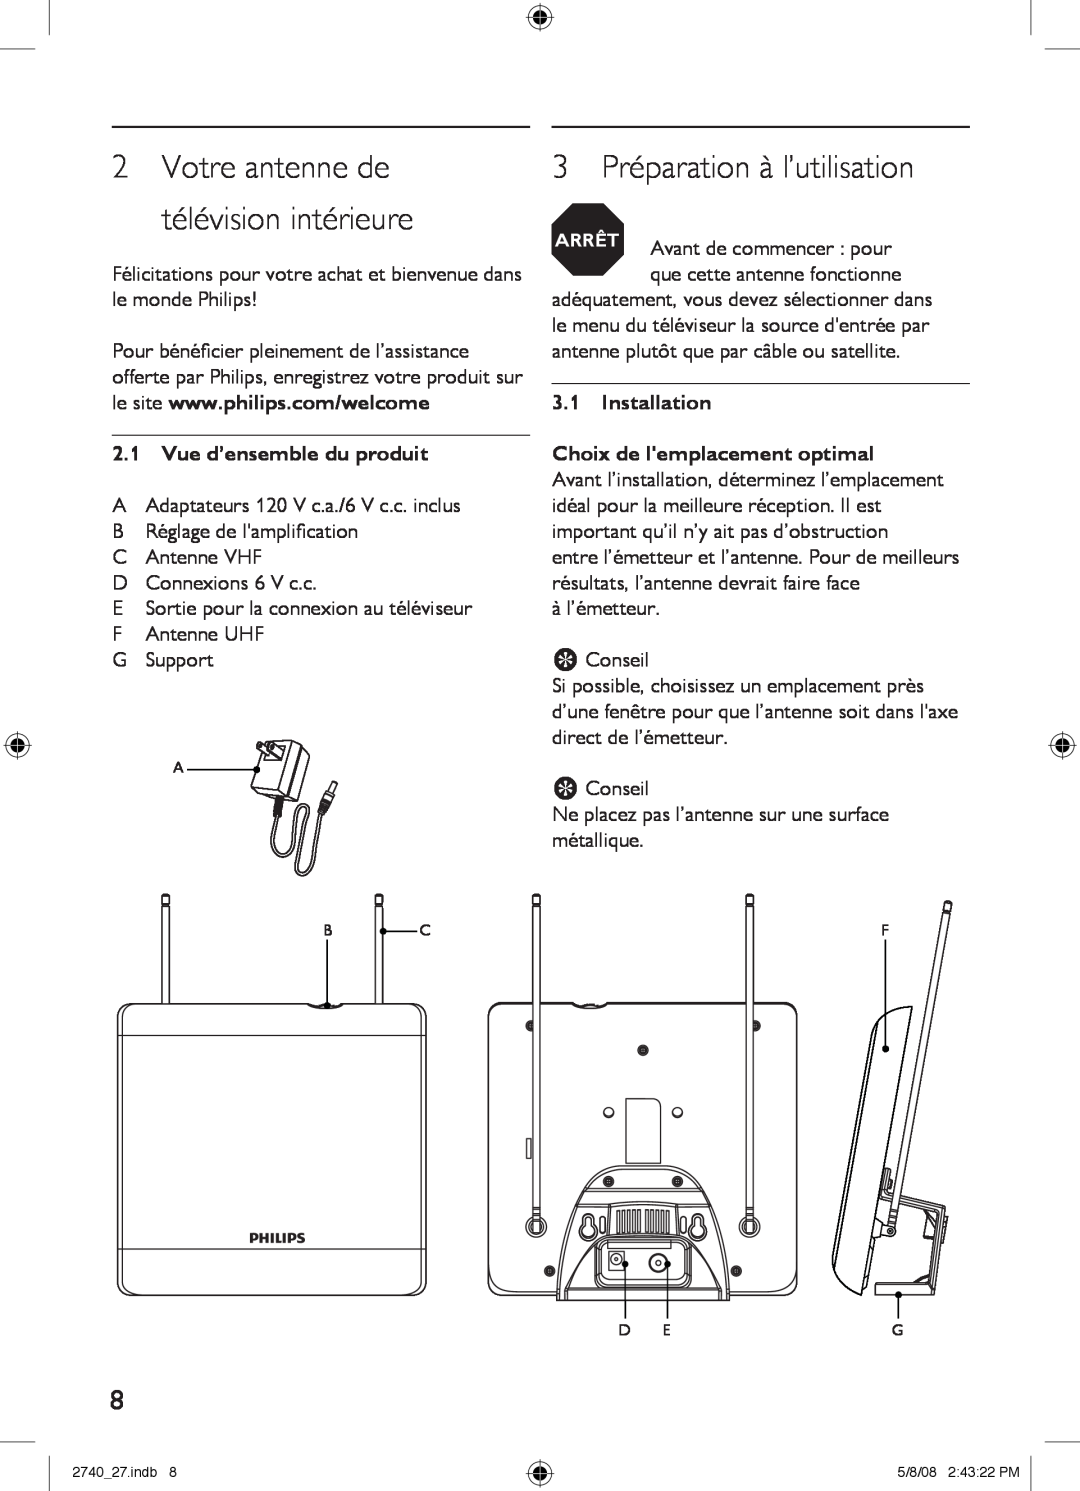 Philips SDV2740/27 manual 3 Préparation à l’utilisation, 2Votre antenne de télévision intérieure 